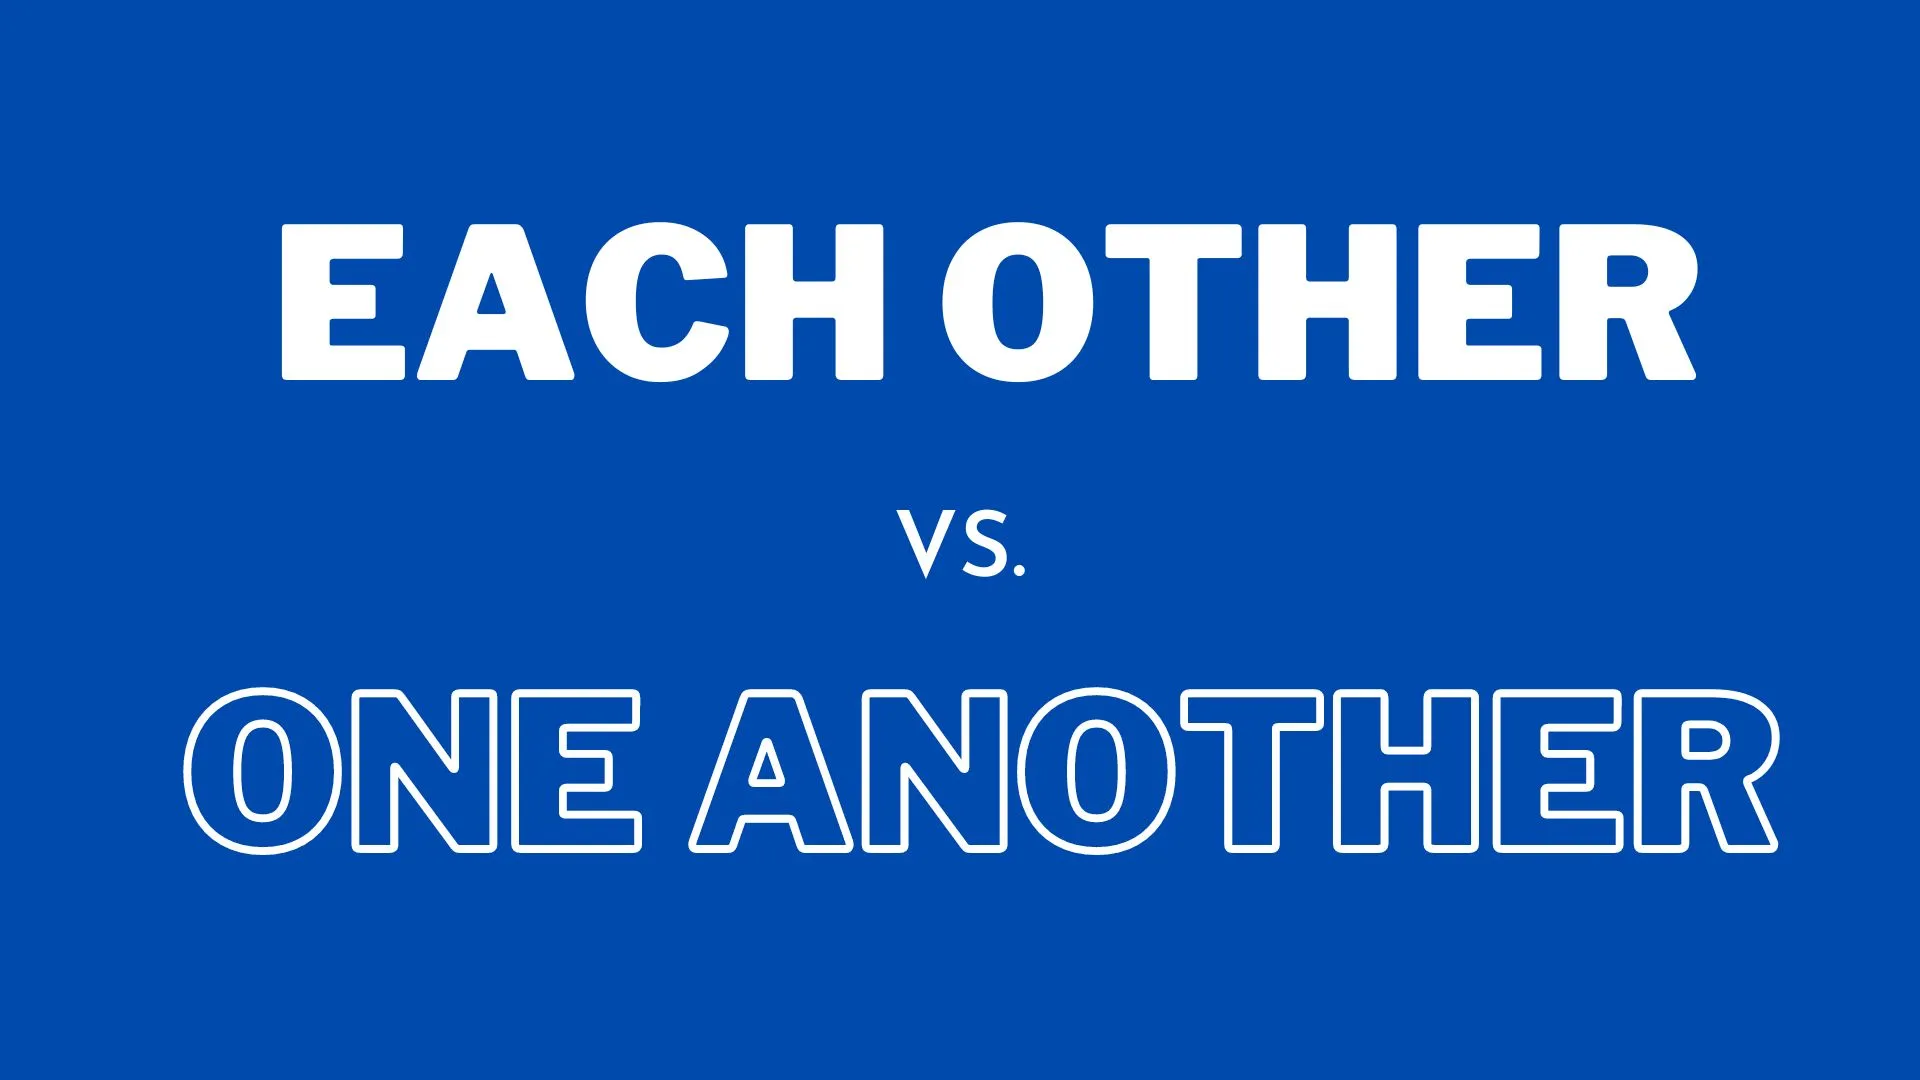 Ilustracja przedstawiająca różnicę między "each other" a "one another" w gramatyce angielskiej dla nauczycieli i uczniów angielskiego.